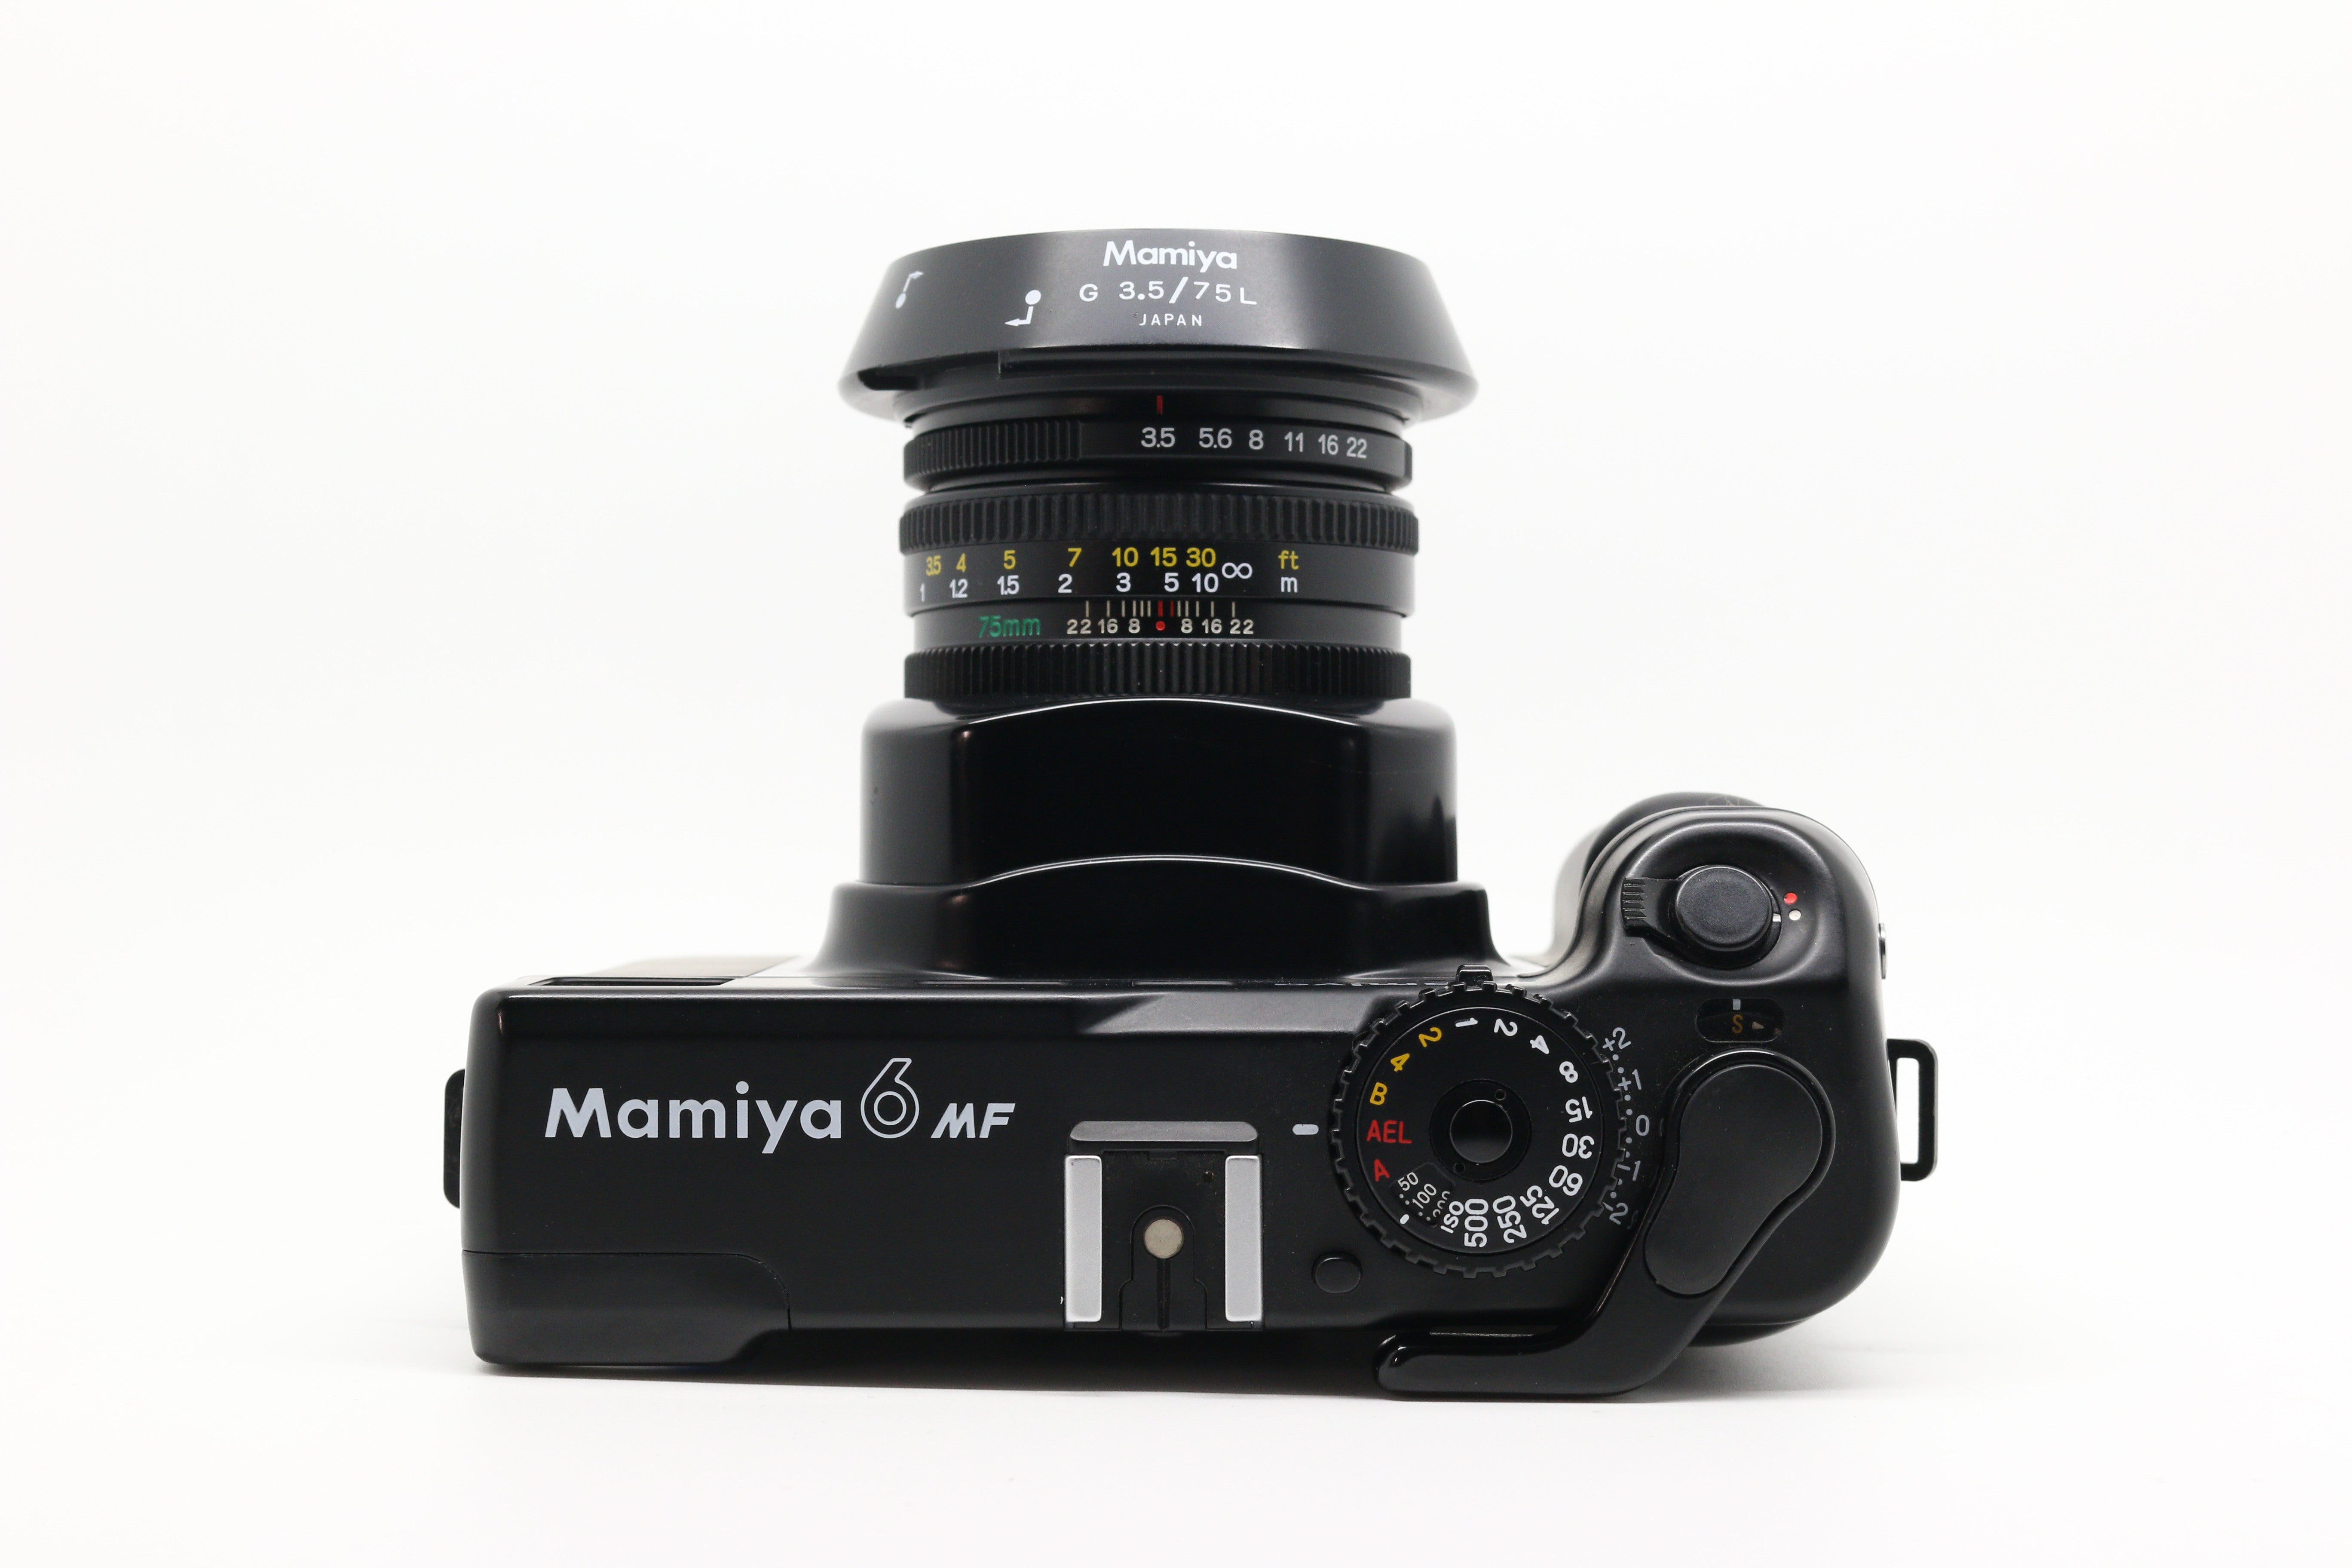 Mamiya 6 MF w/ G 75mm f/3.5 Lens